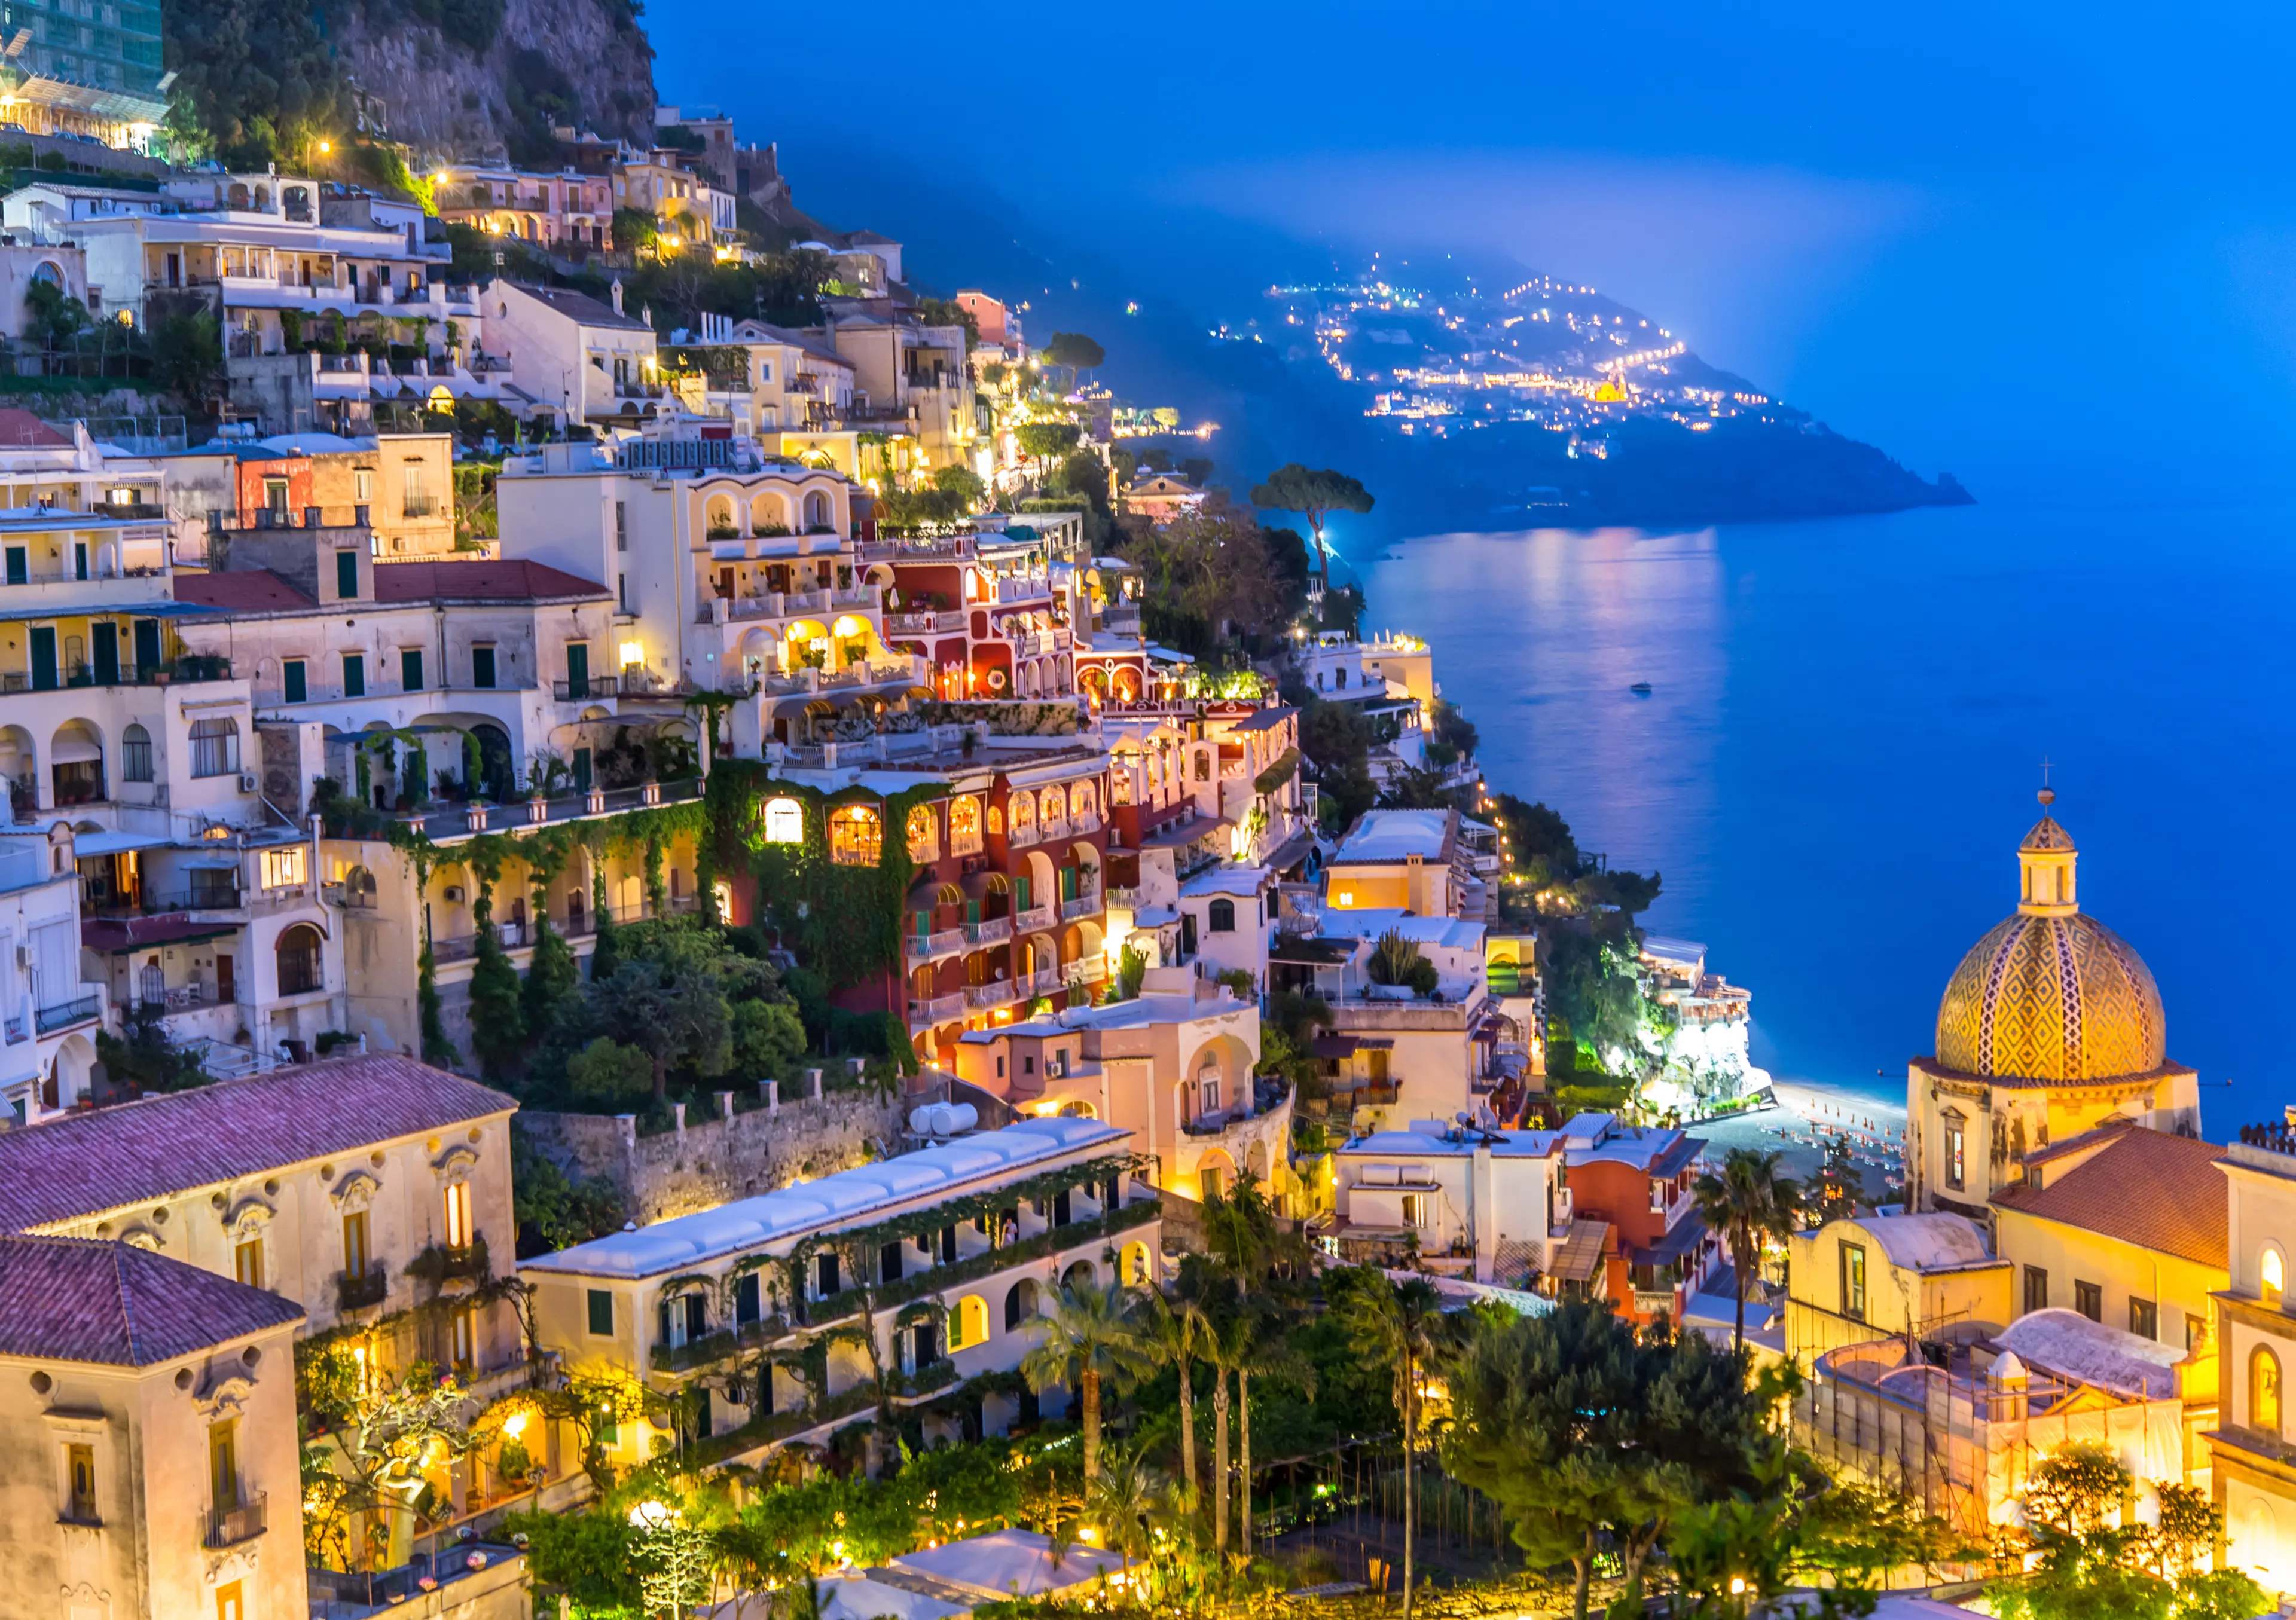 3-Day Ultimate Exploration of Amalfi Coast, Italy